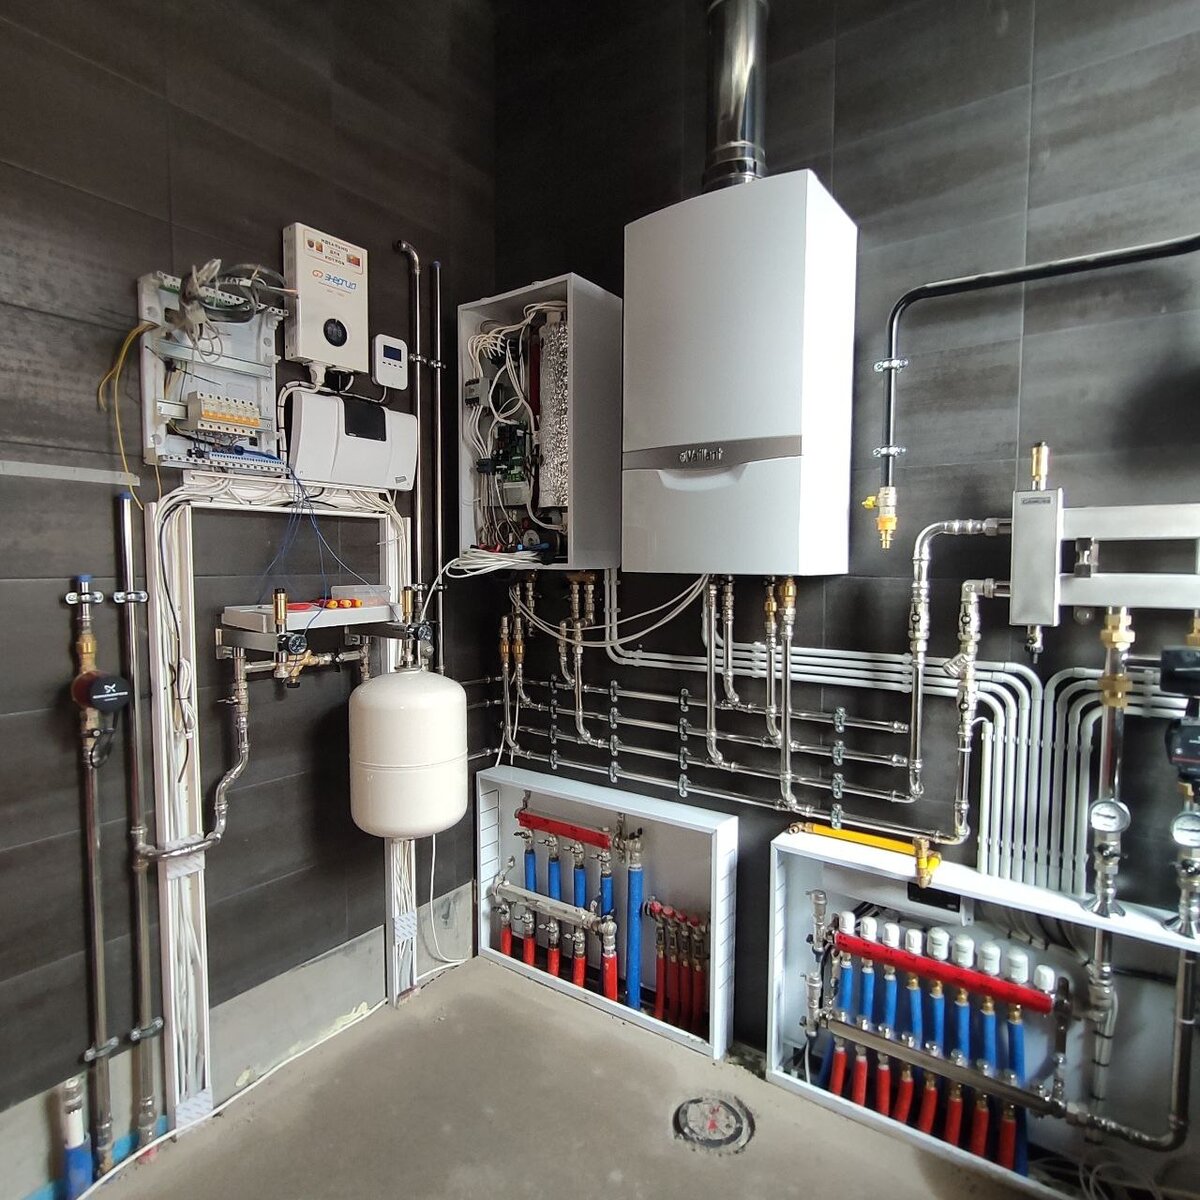 Пример качественного и профессионального монтажа системы отопления и водоснабжения в коттедже площадью 240 кв.м. от инженерного центра